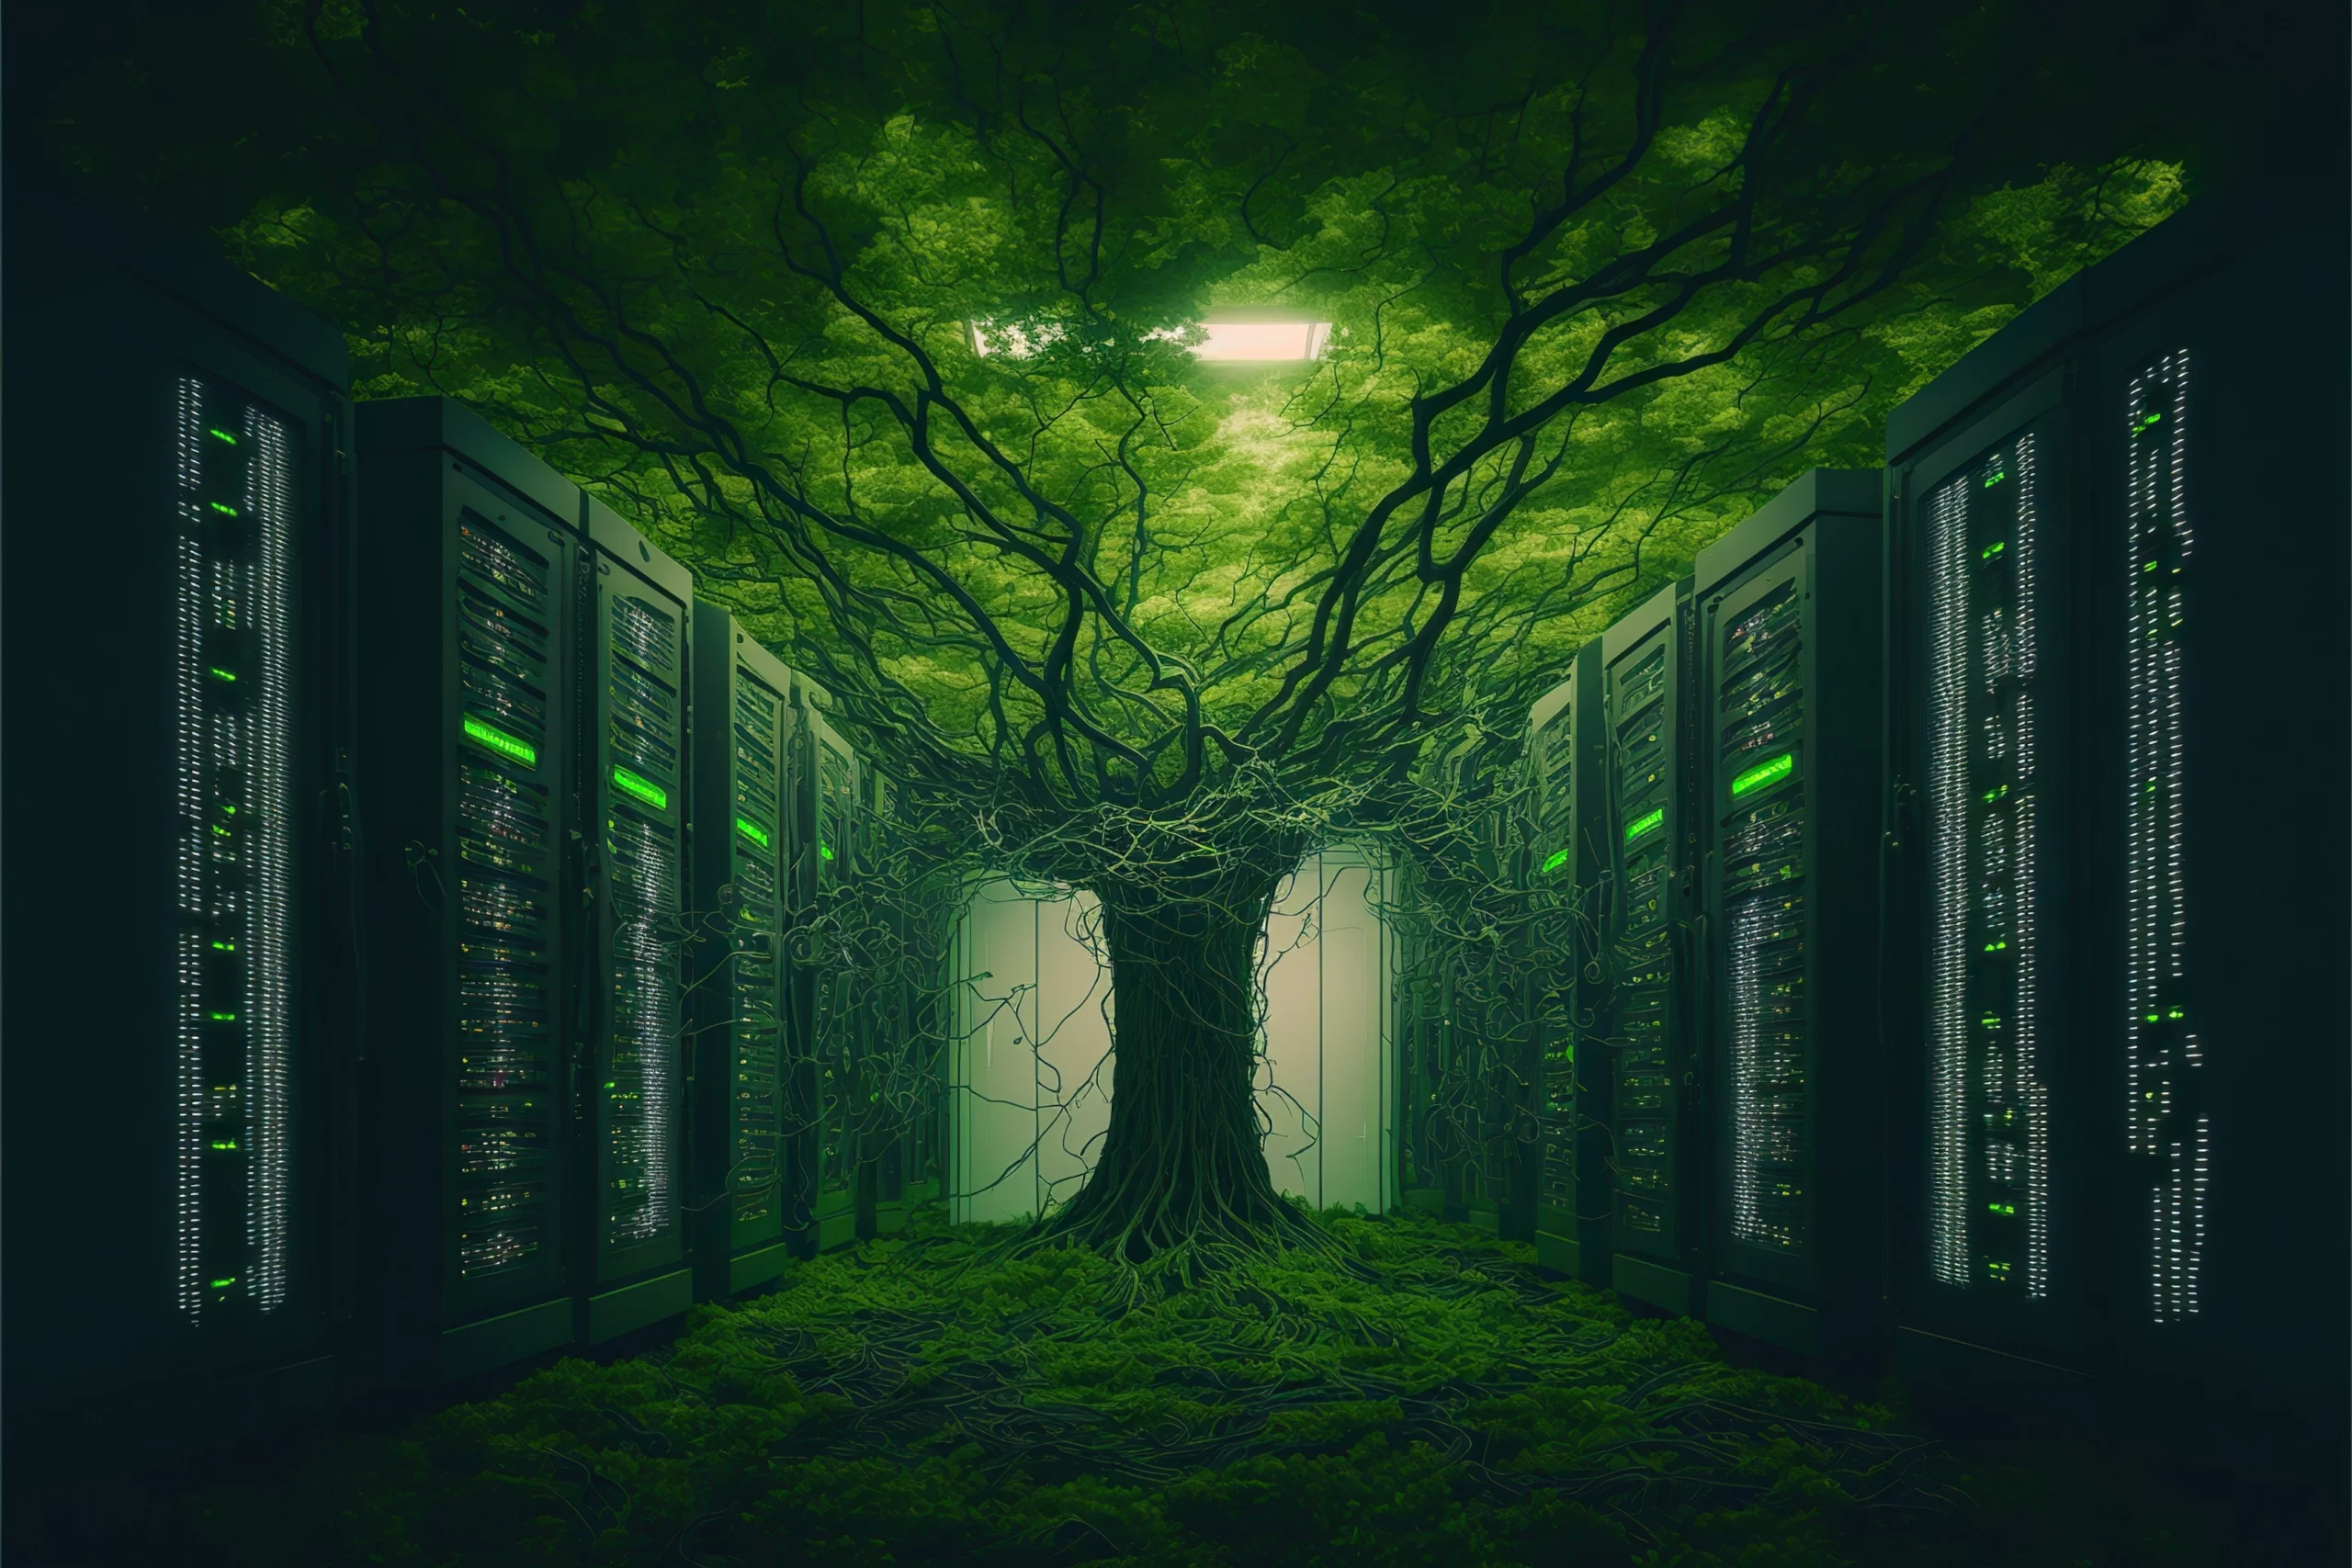 salle de serveurs avec un arbre qui prend possession des lieux Green IT